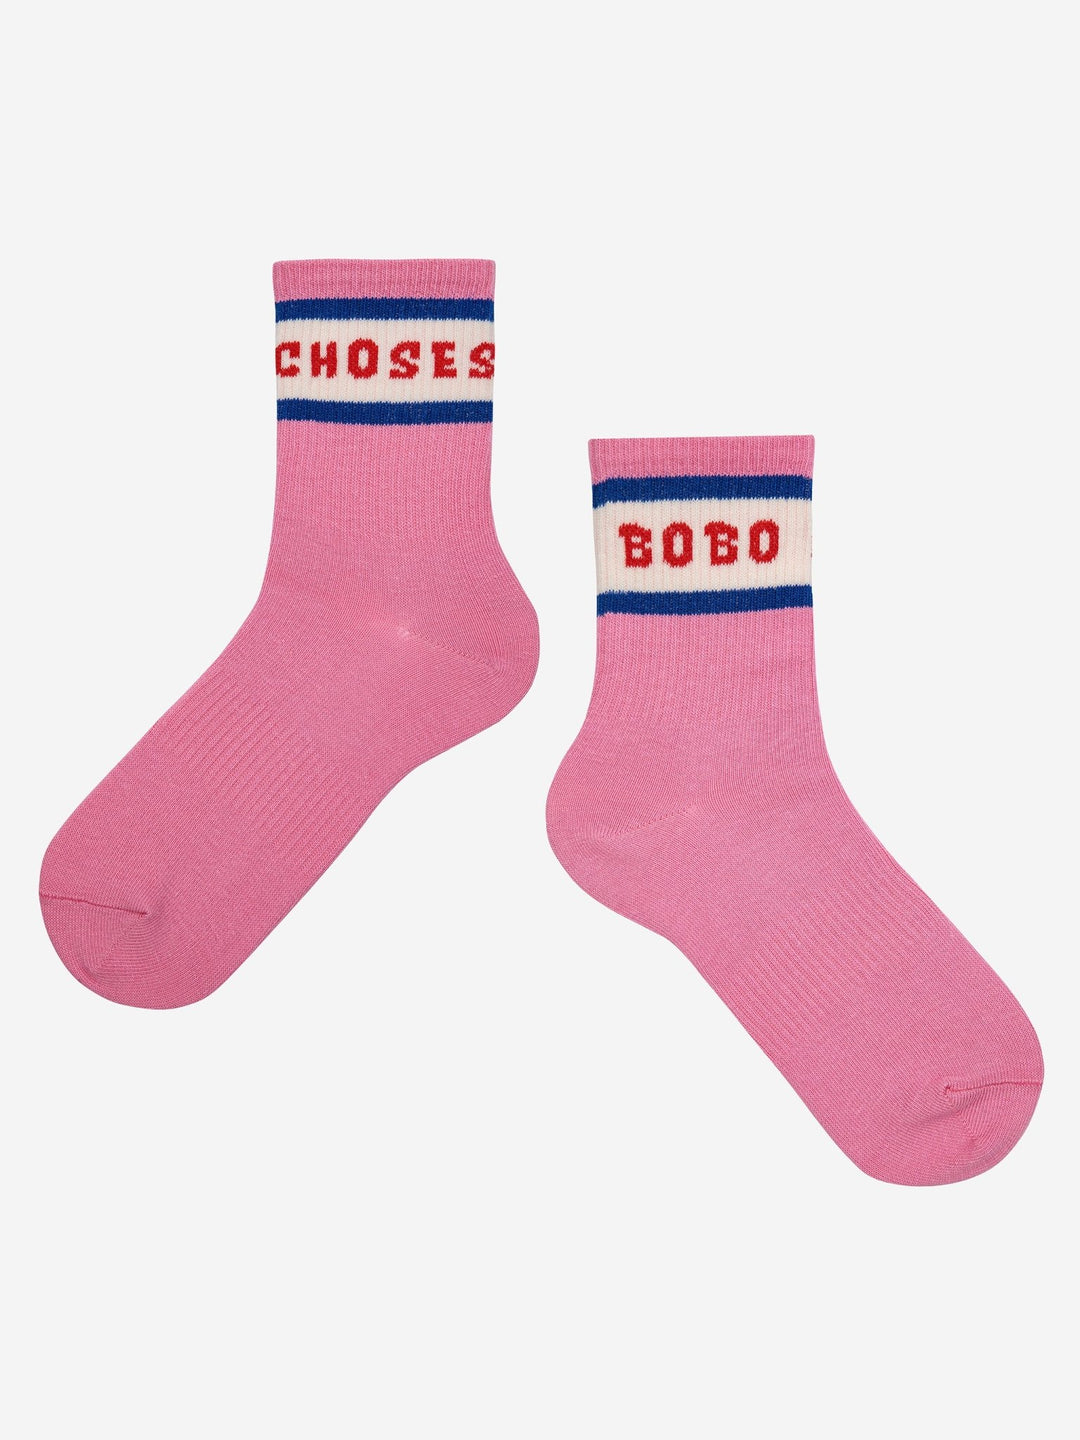 Bobo Choses Short Socks - Fuchsia - Posh New York